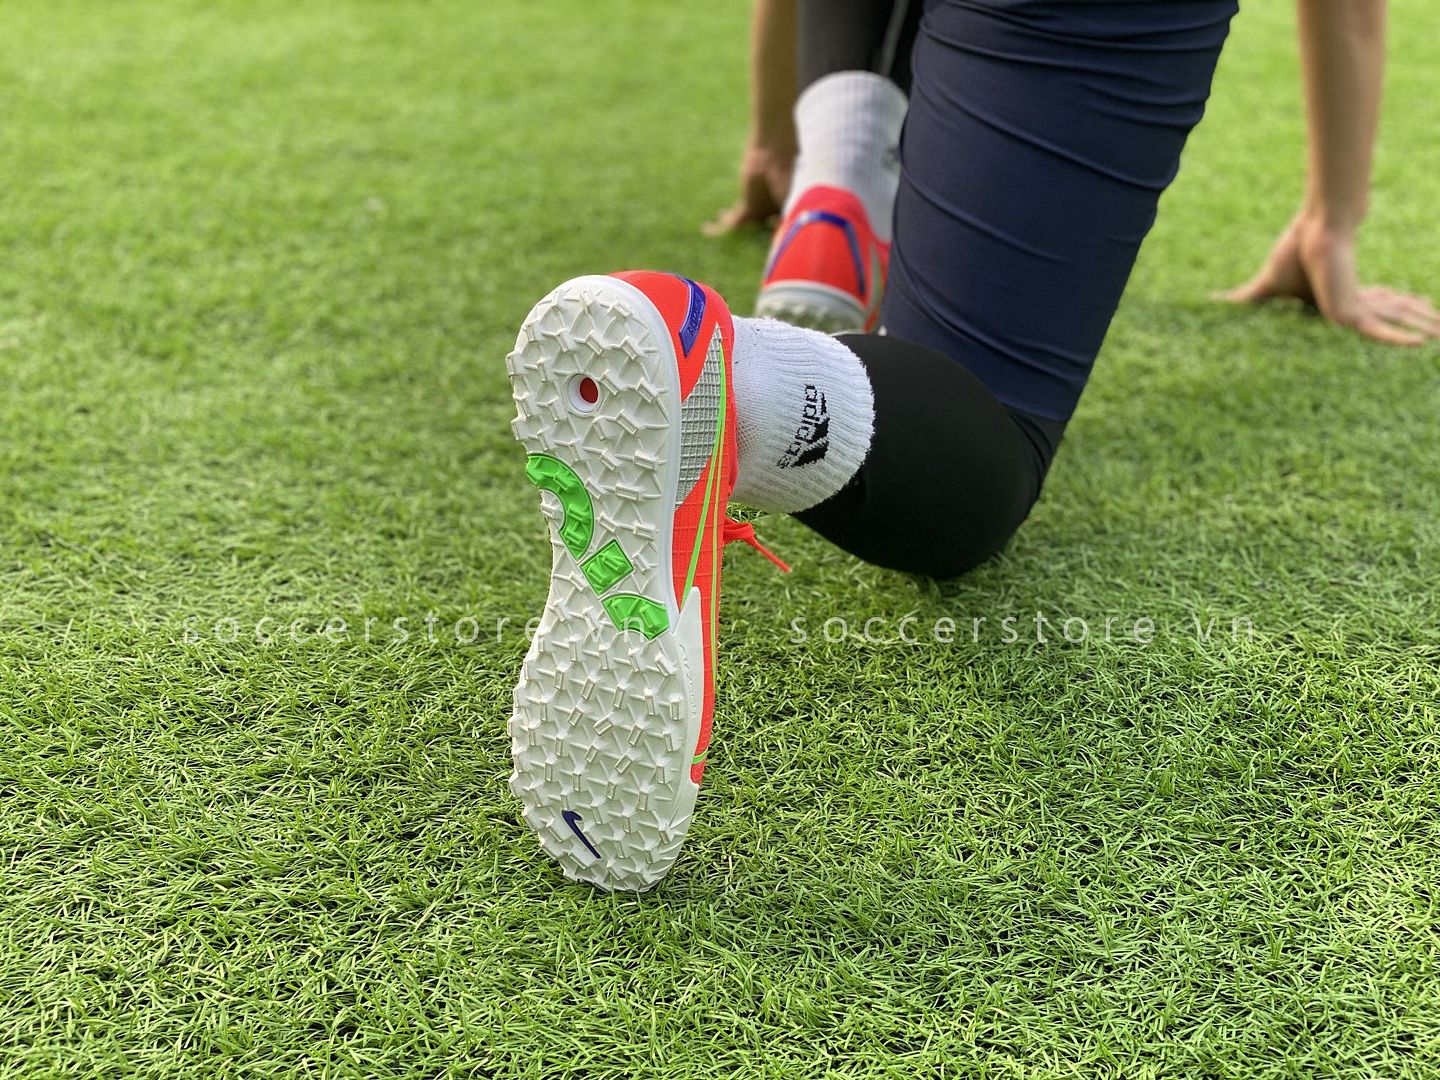 Review, trên chân, đánh giá Nike Mercurial Vapor 14 Pro TF 2021